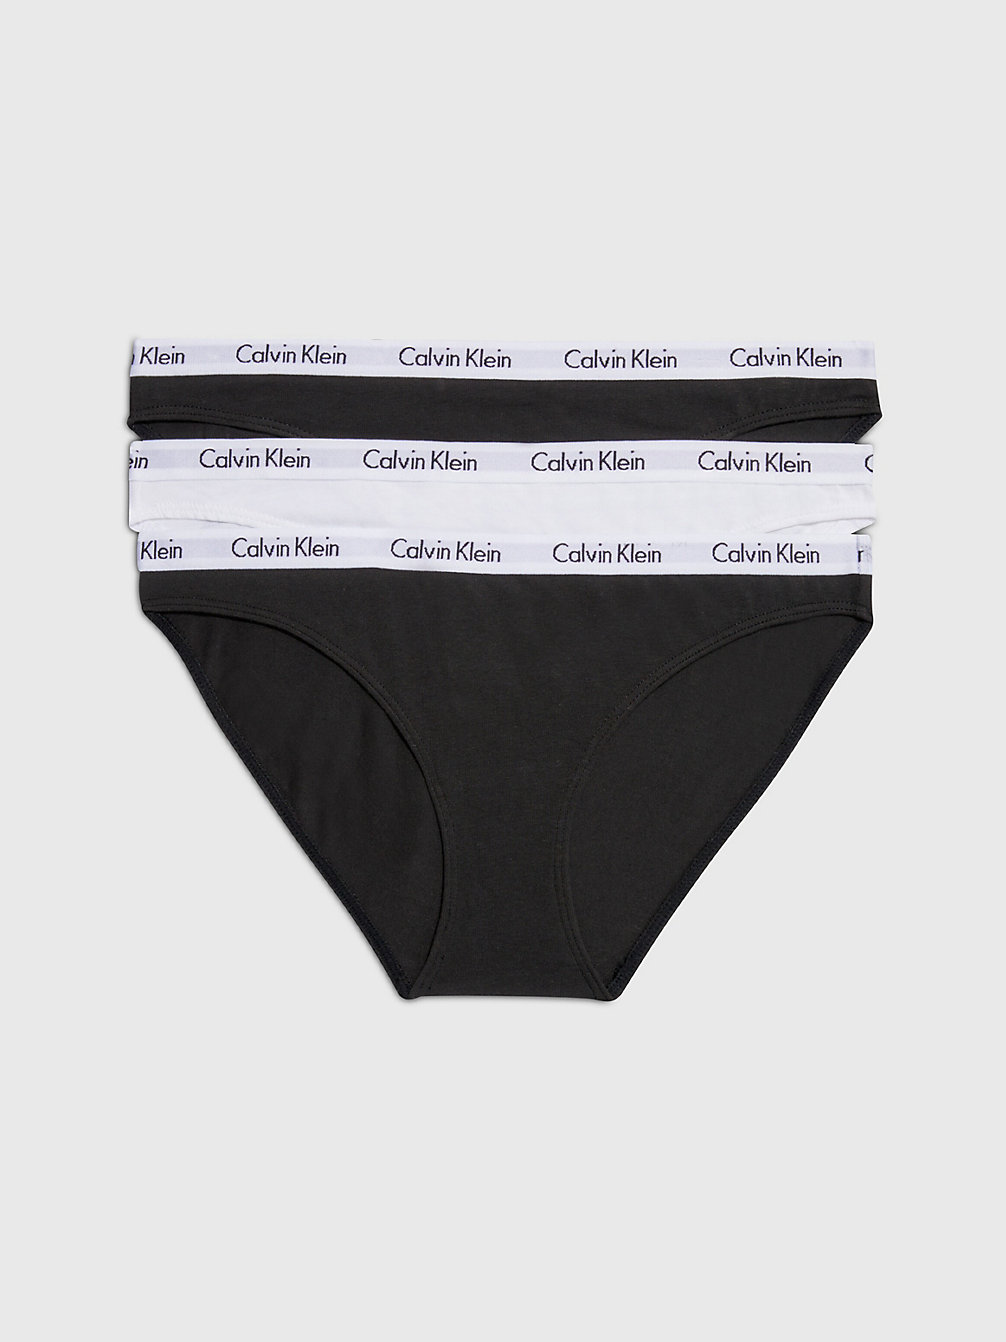 BLACK/WHITE/BLACK 3-Pack Bikini Slips - Carousel undefined dames Calvin Klein